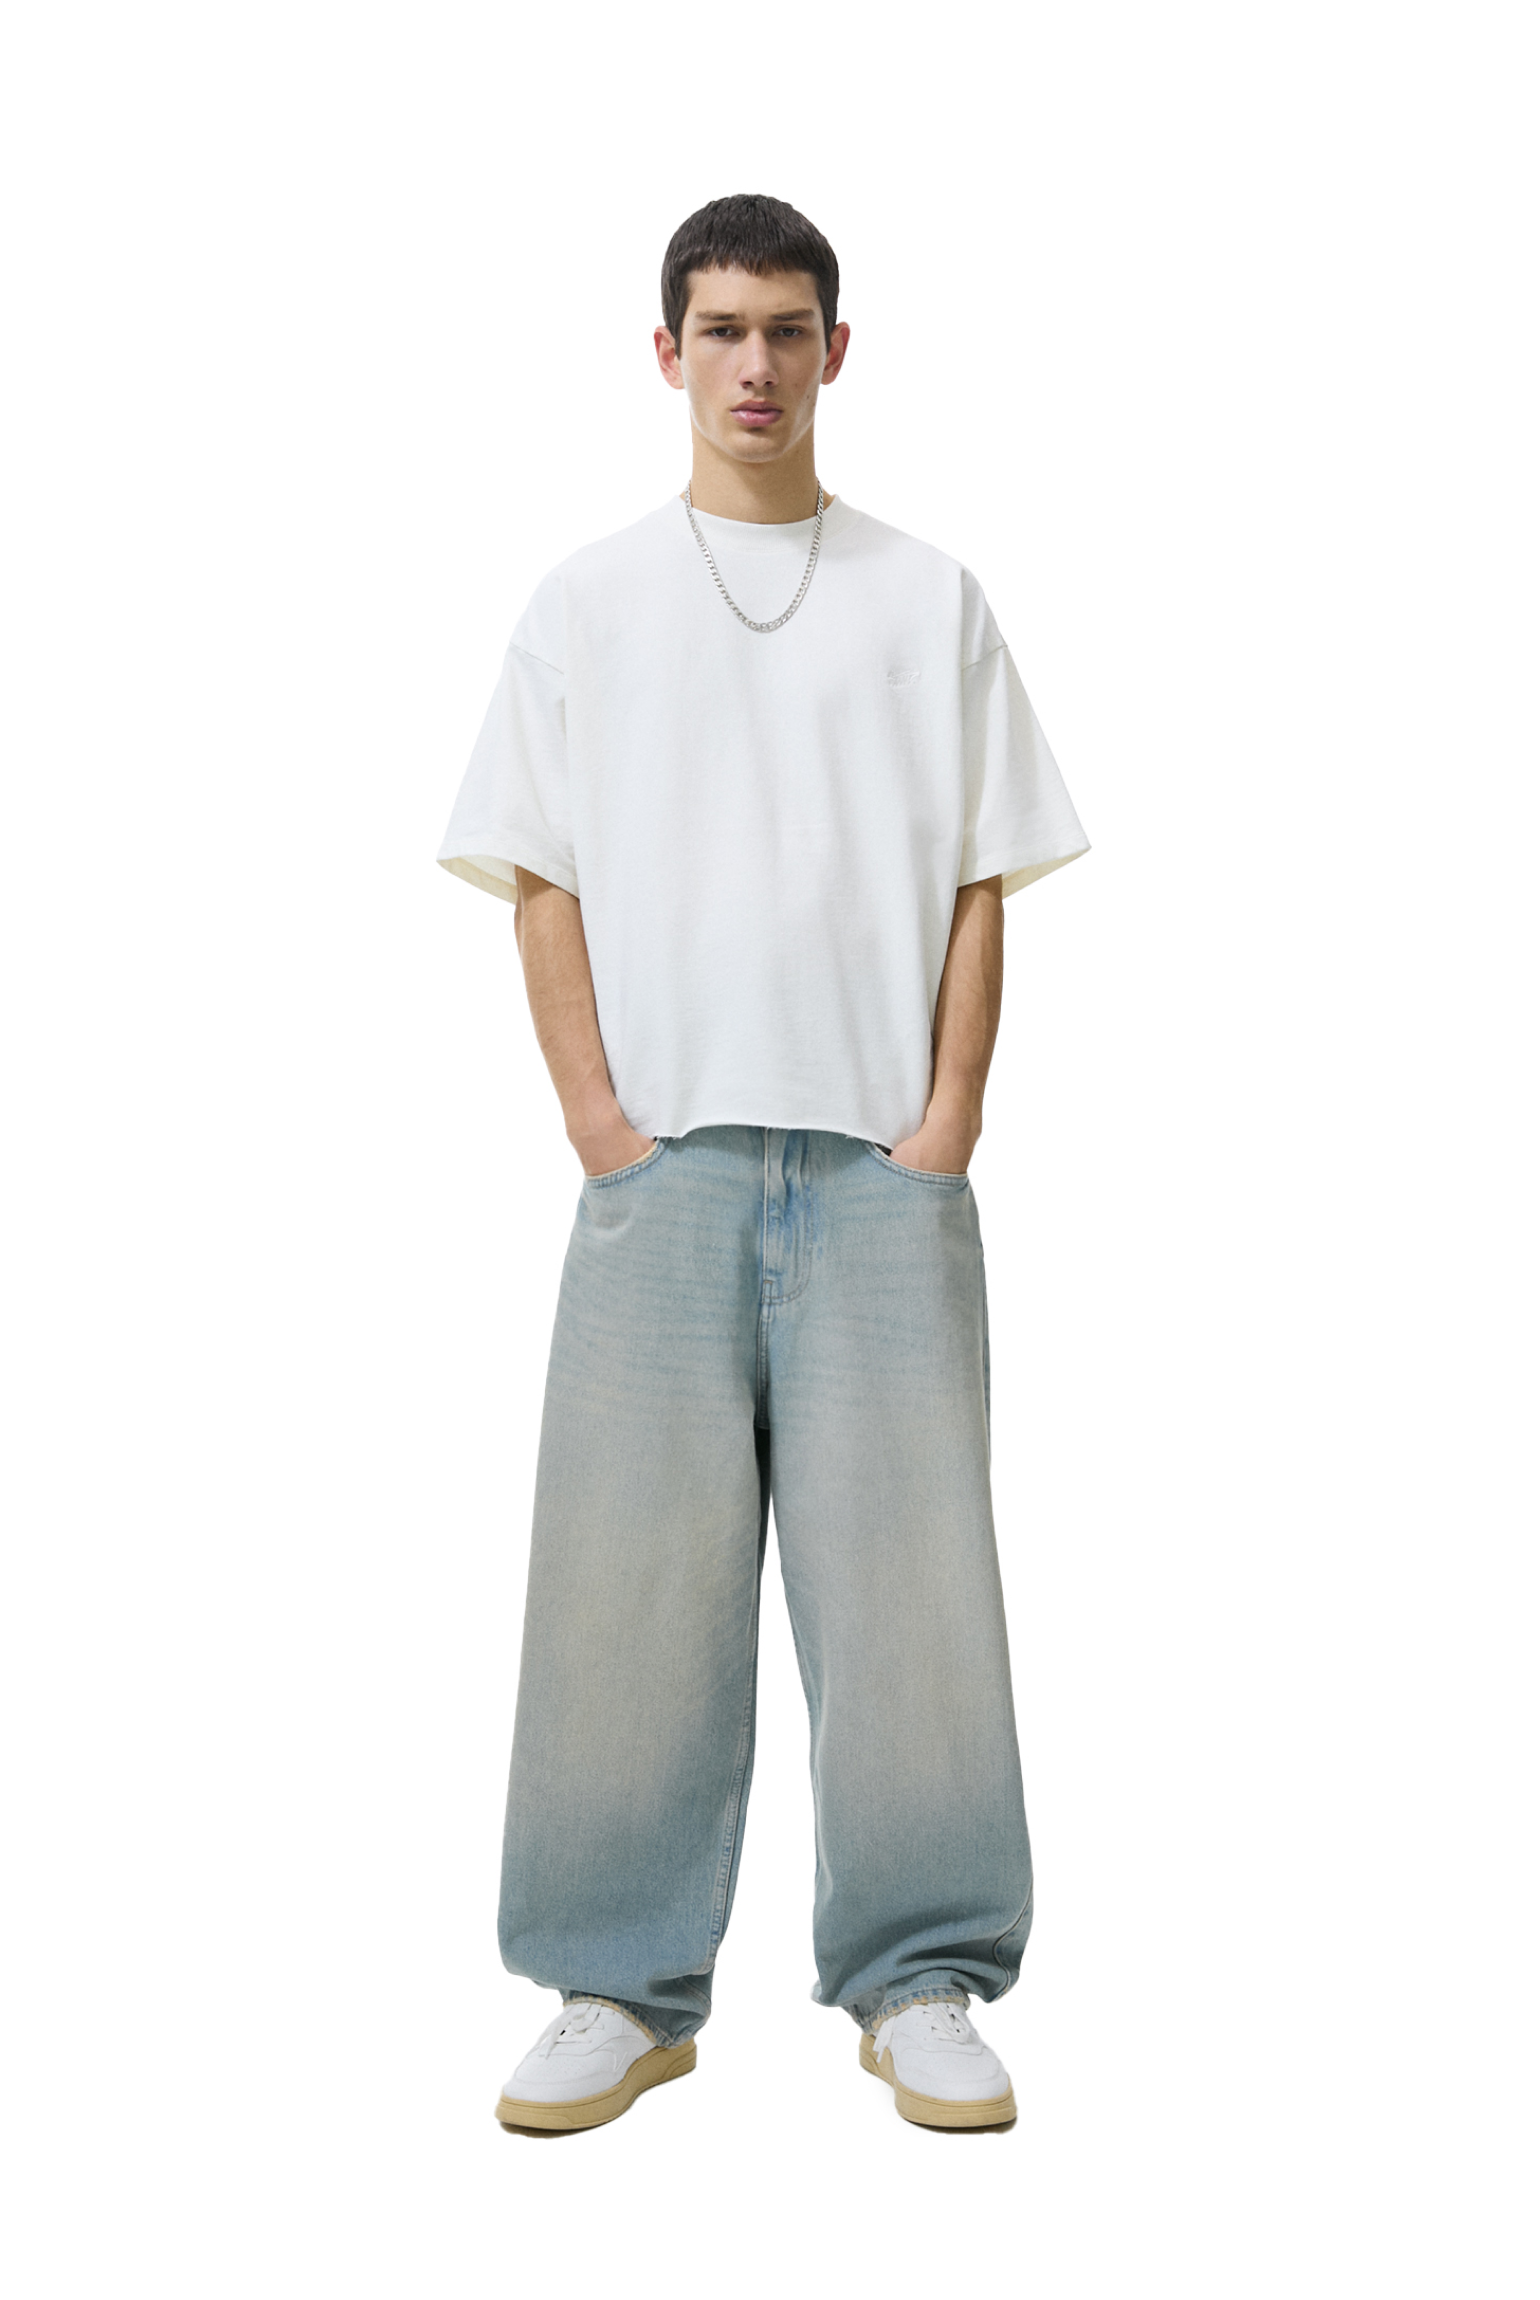 Jean ample pour homme, pantalon en Denim, coupe droite, Design